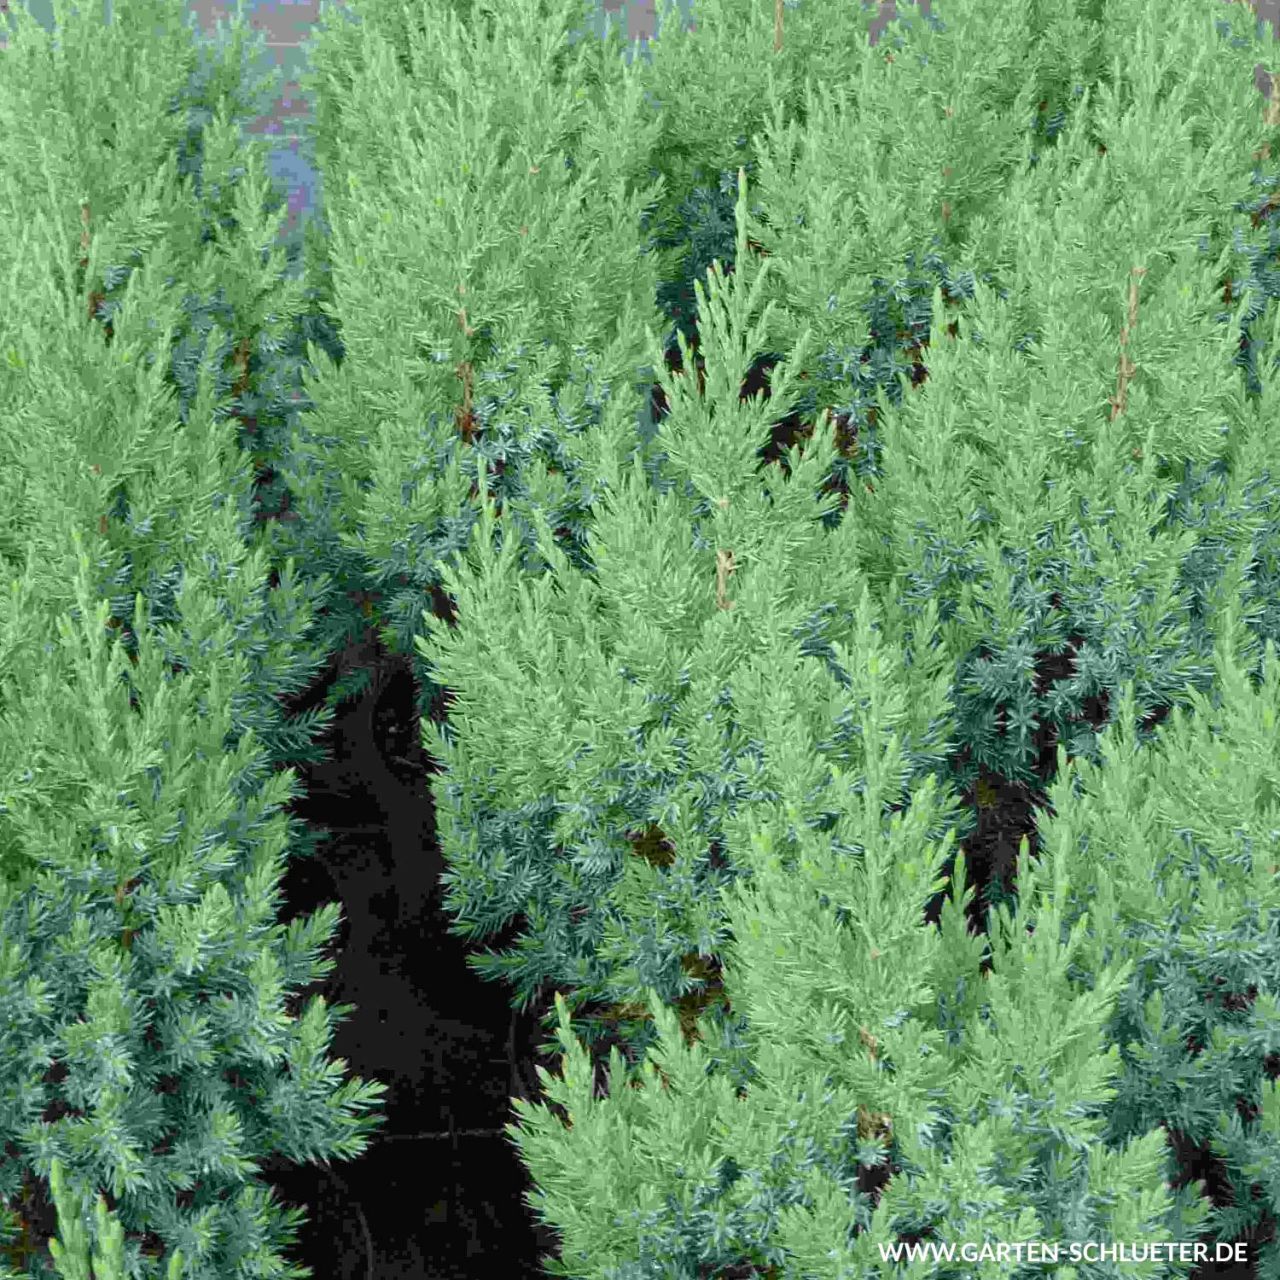  Blauer Kegelwacholder 'Stricta' - Juniperus chinensis 'Stricta'